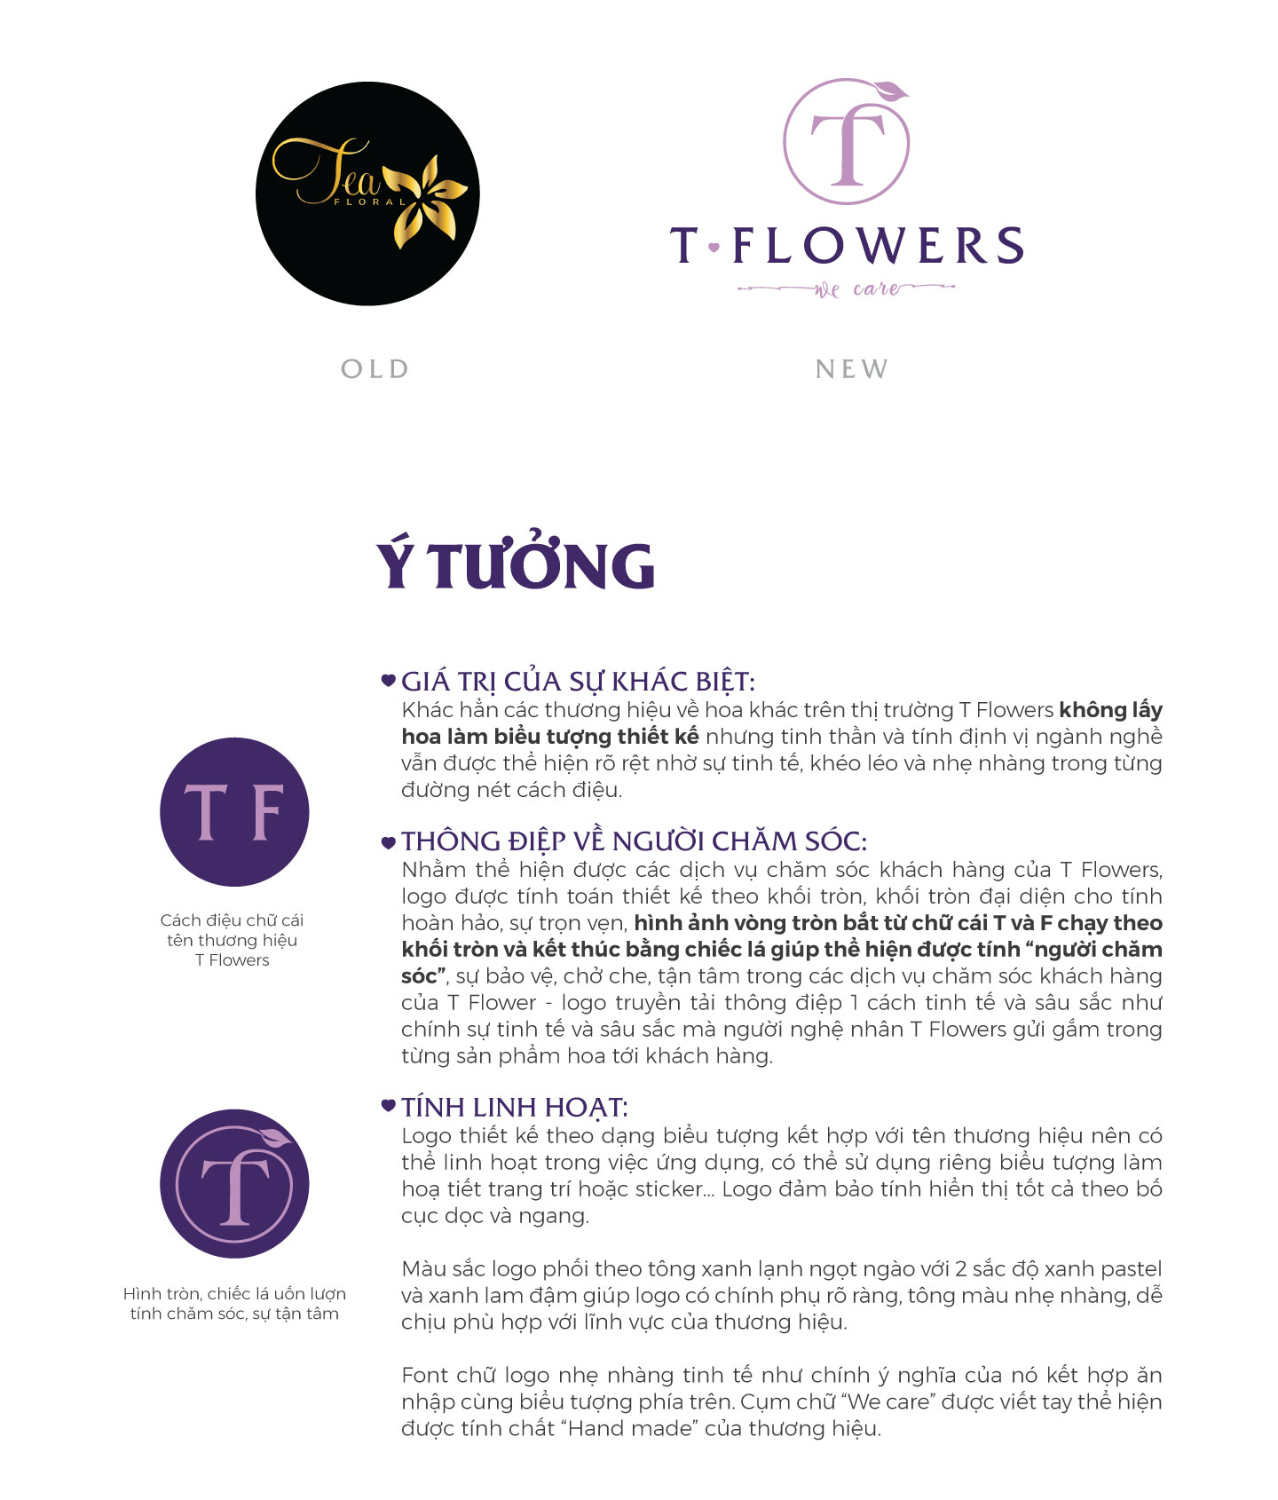 Thiet ke logo Hung Thinh 1